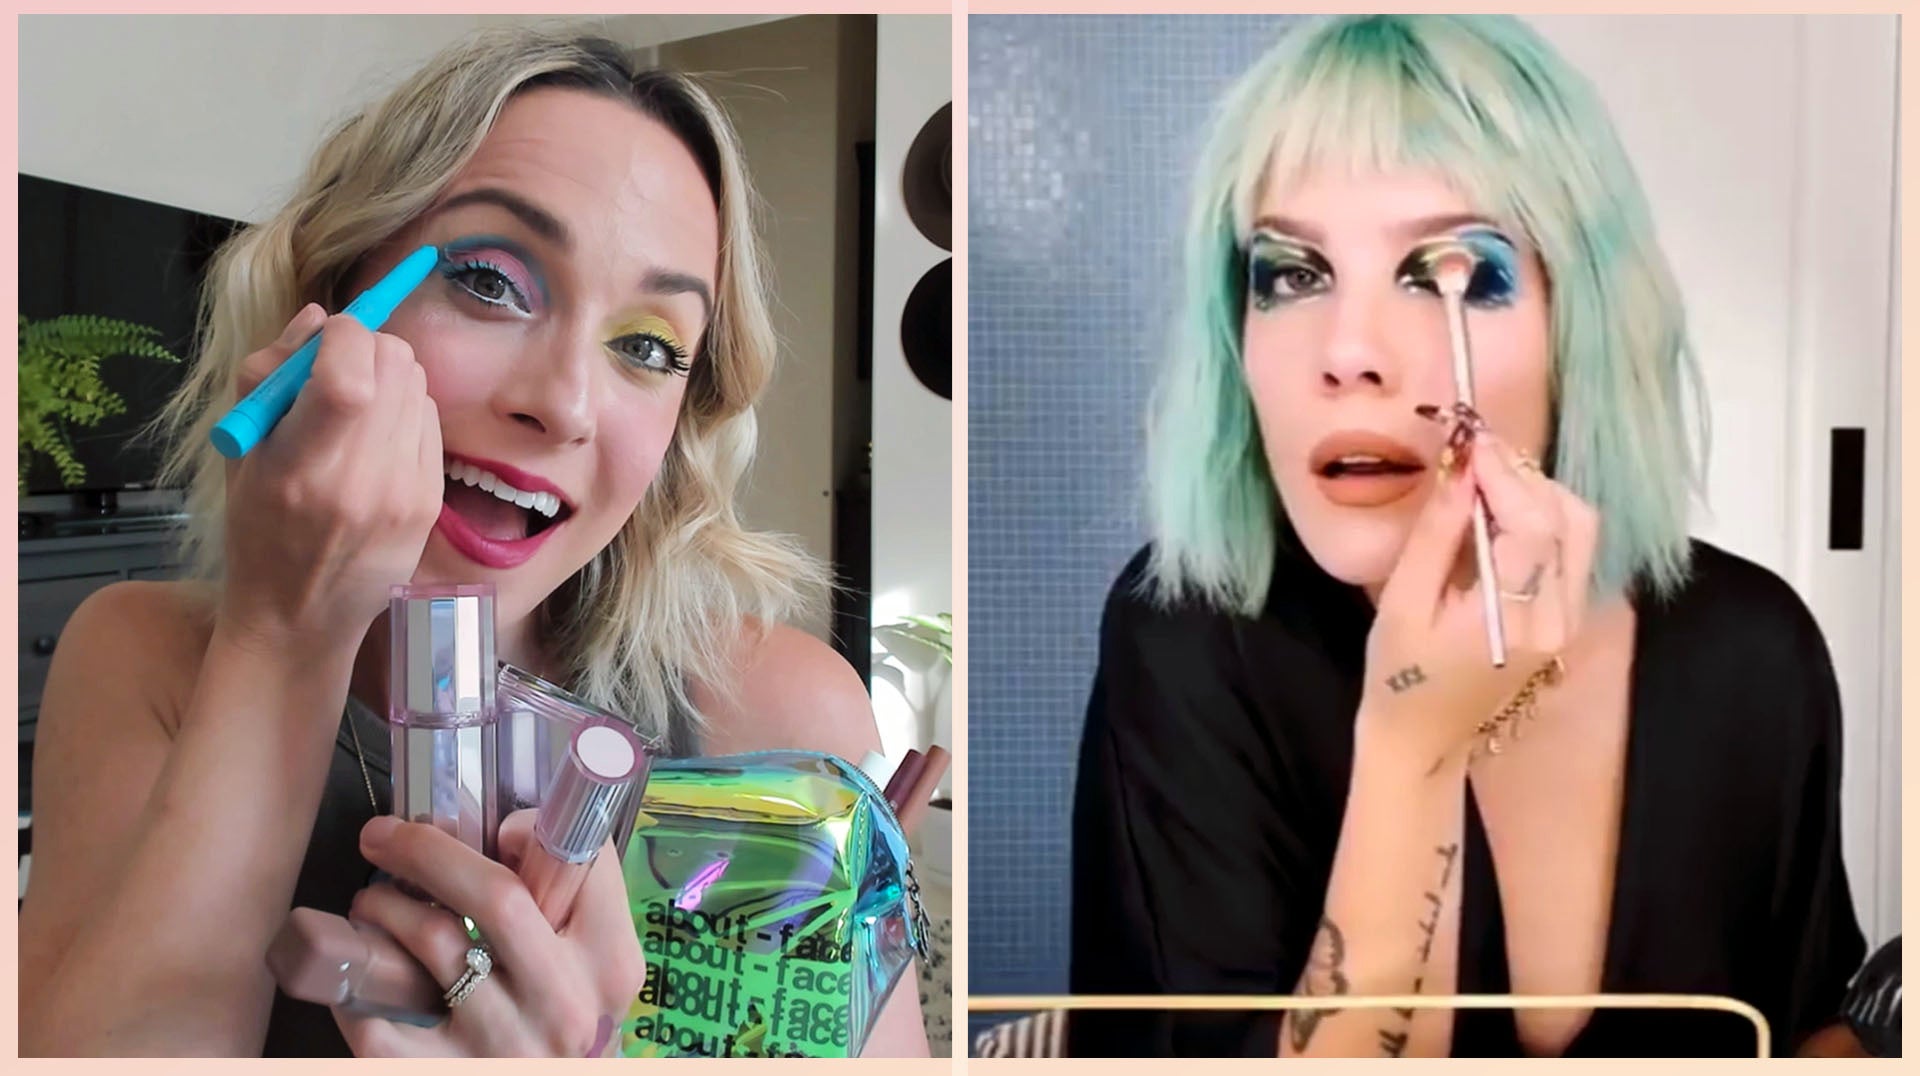 Halsey Launches Makeup Line About-Face: Details